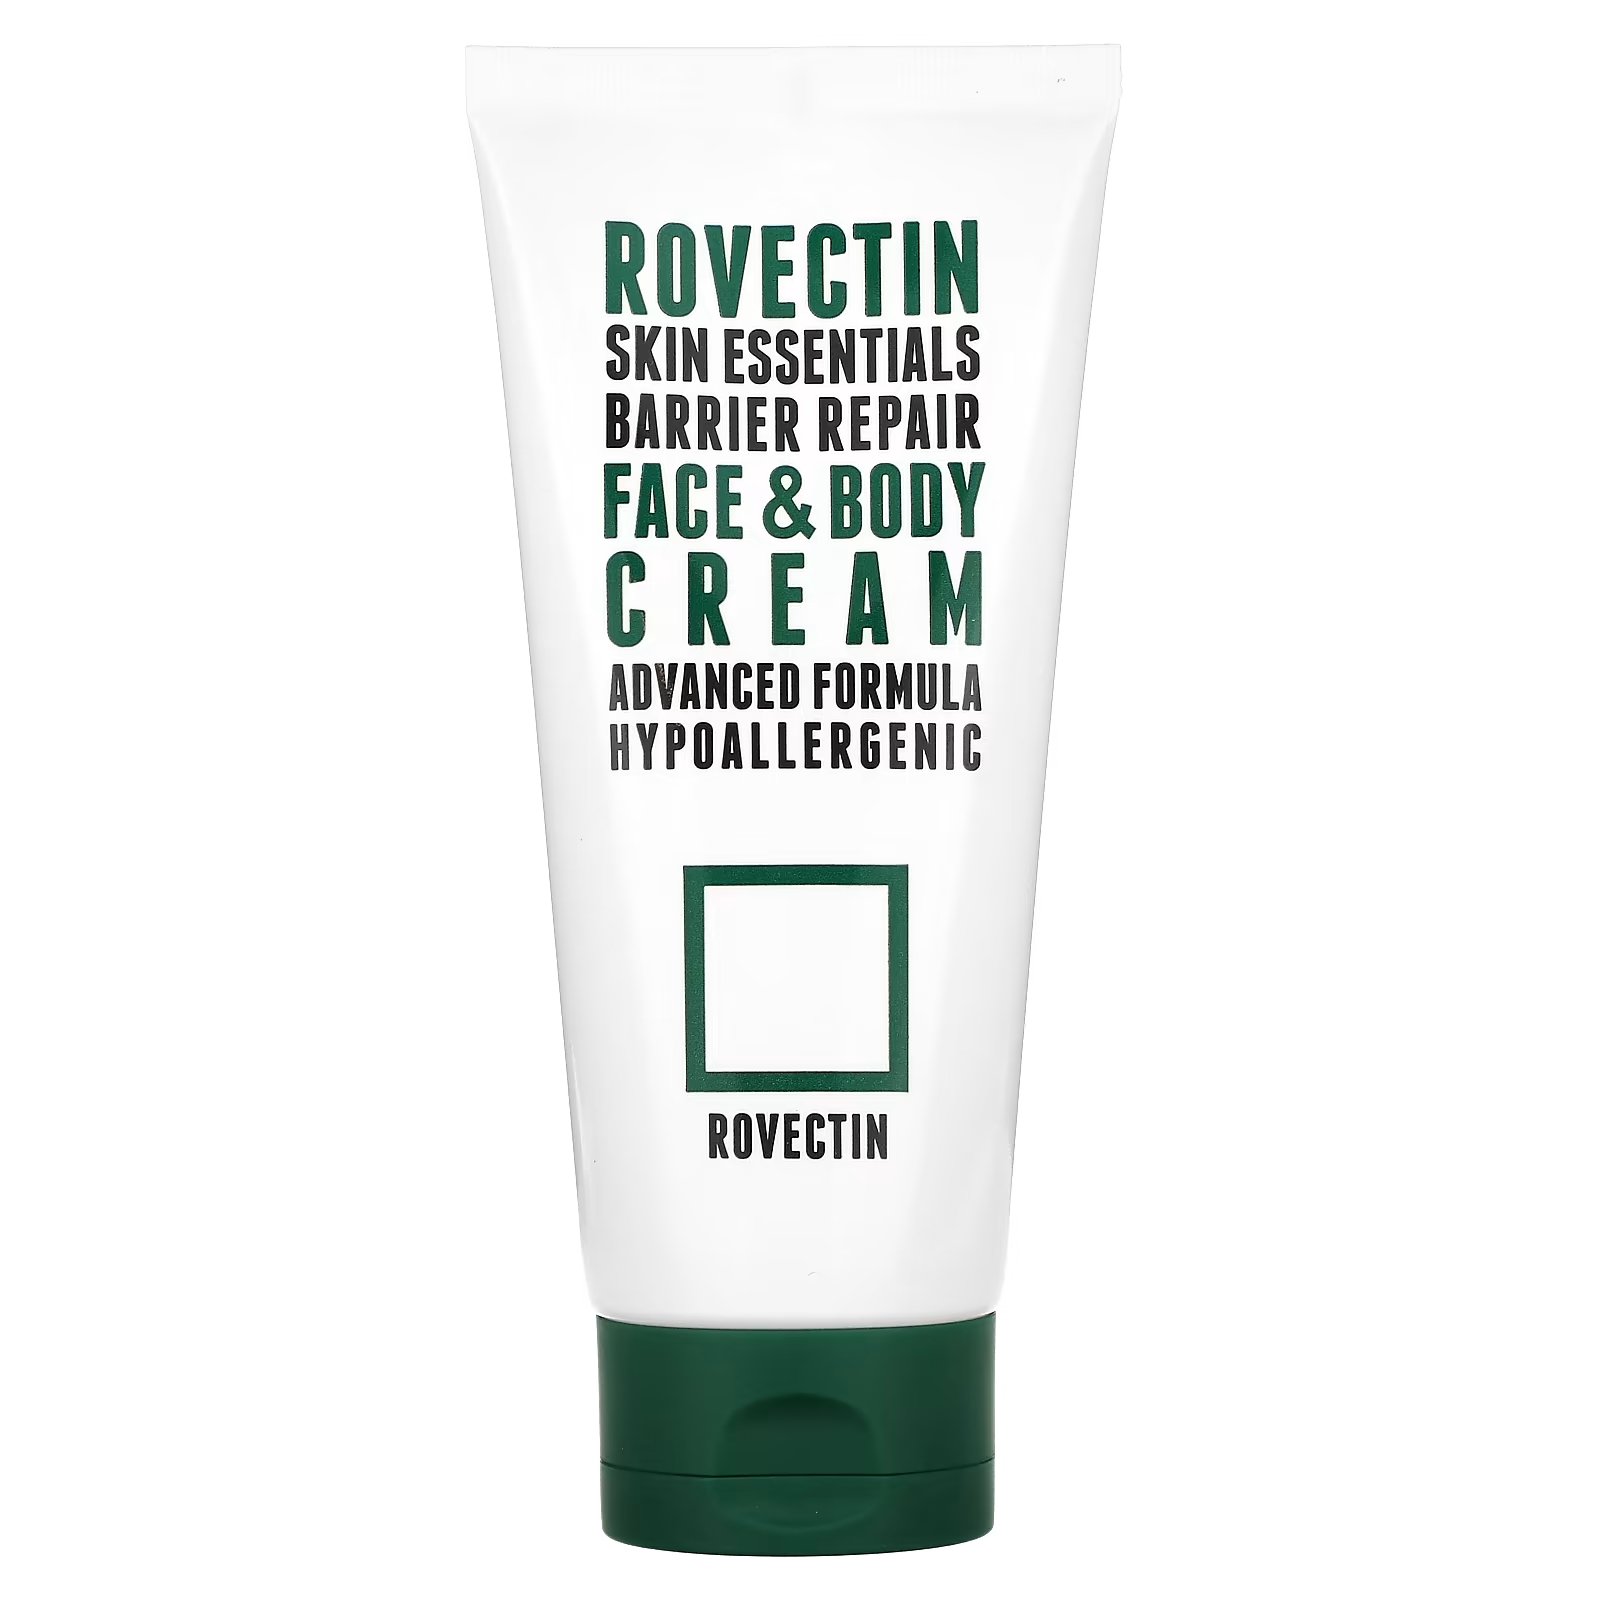 Крем для лица и тела Rovectin Skin Essentials восстанавливающий, 175 мл rovectin skin essentials водный концентрат для восстановления барьеров 60 мл 2 1 жидк унции